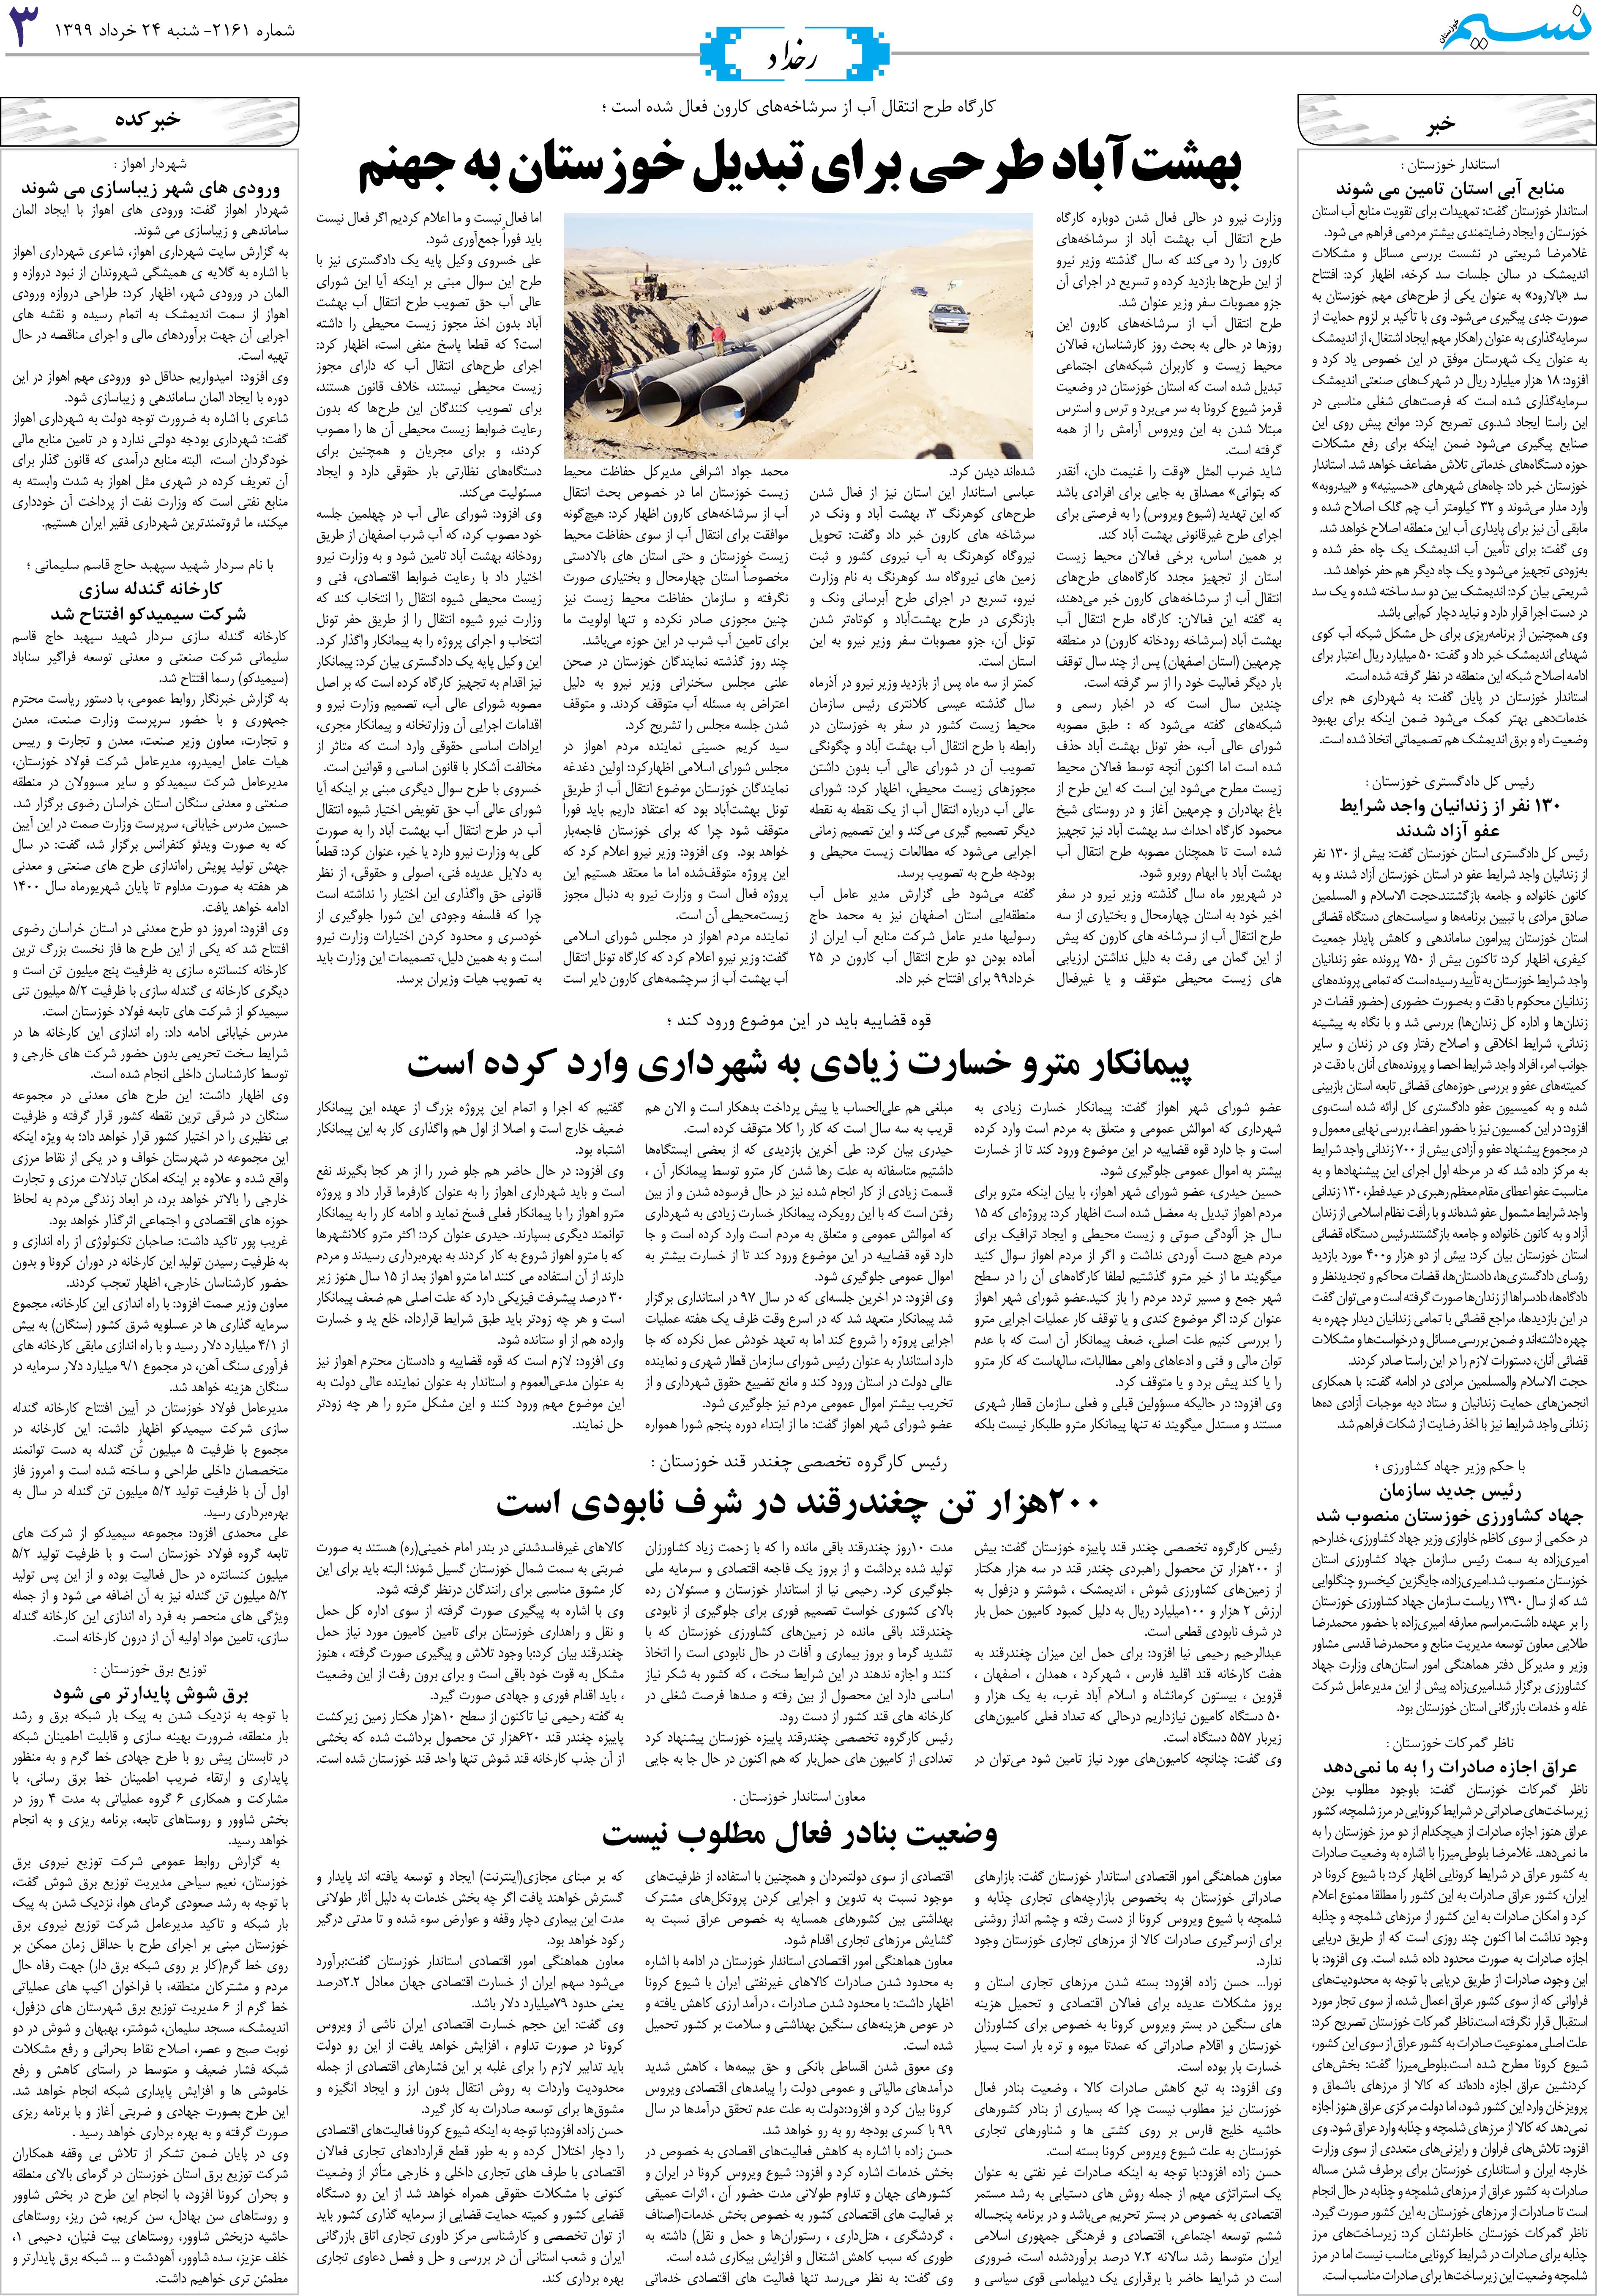 صفحه رخداد روزنامه نسیم شماره 2161